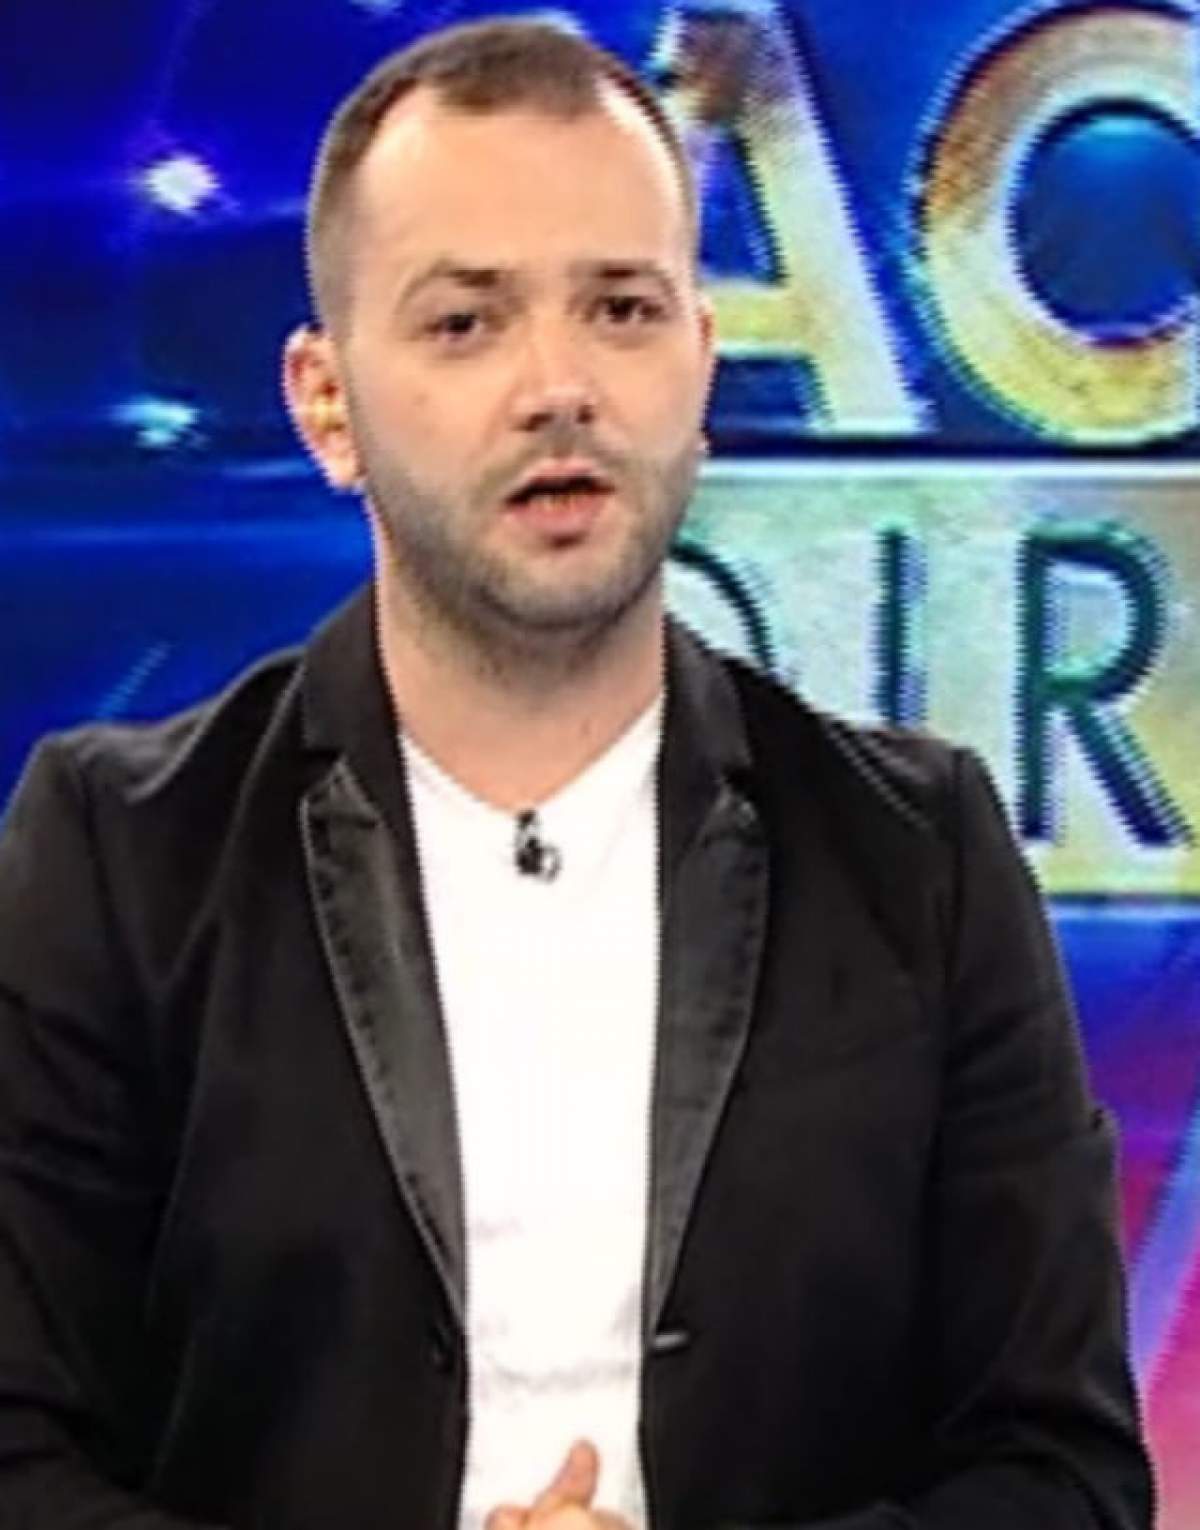 Primele declaraţii ale lui Mihai Morar, în rolul de prezentator al emisiunii "Acces Direct": "Am o veste proastă şi una bună"